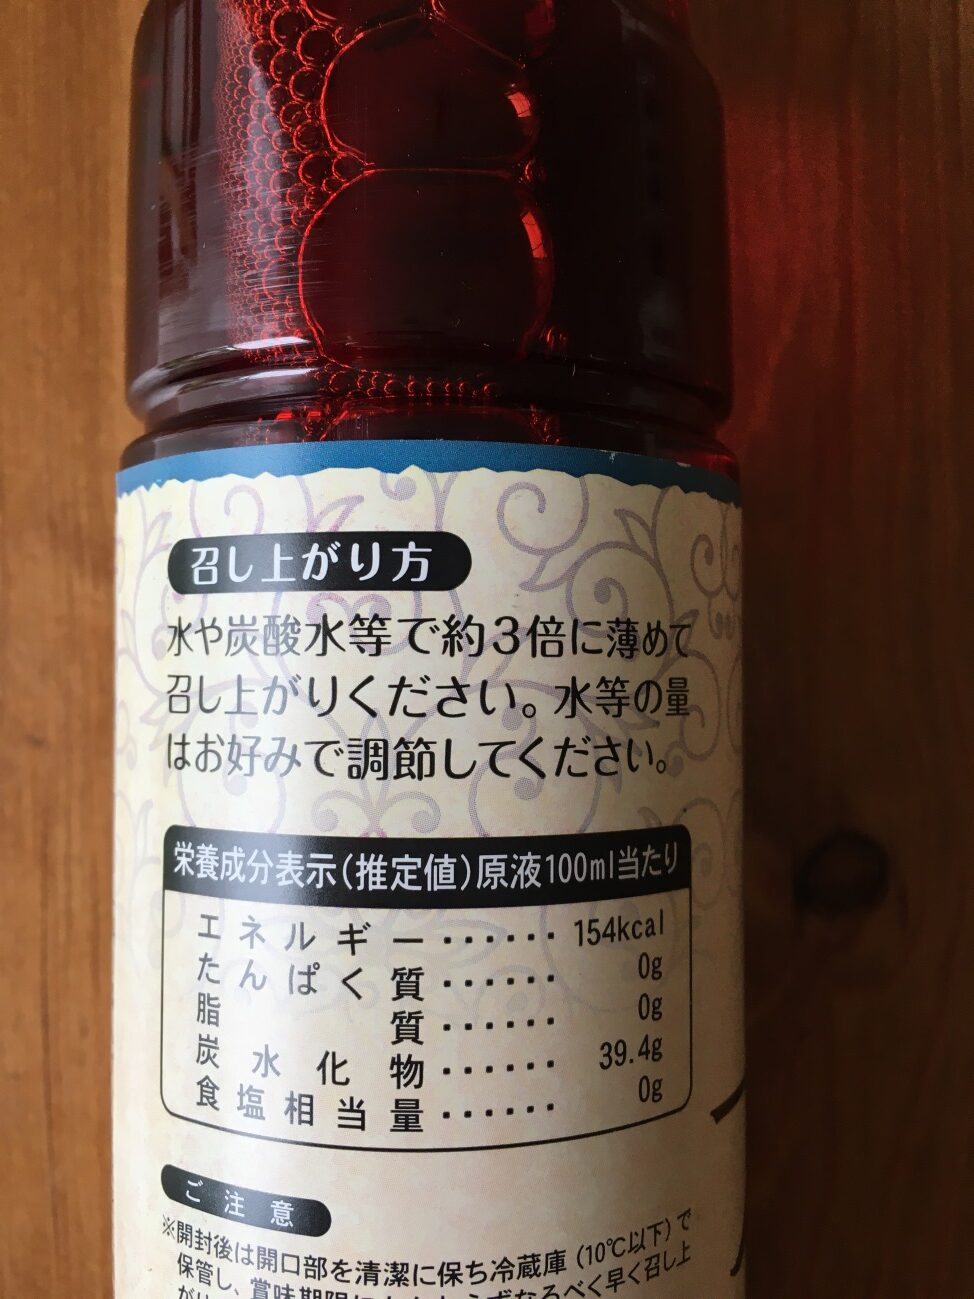 業務スーパーのすっきりブルーベリー酢の瓶ラベルに記載されている召し上がり方